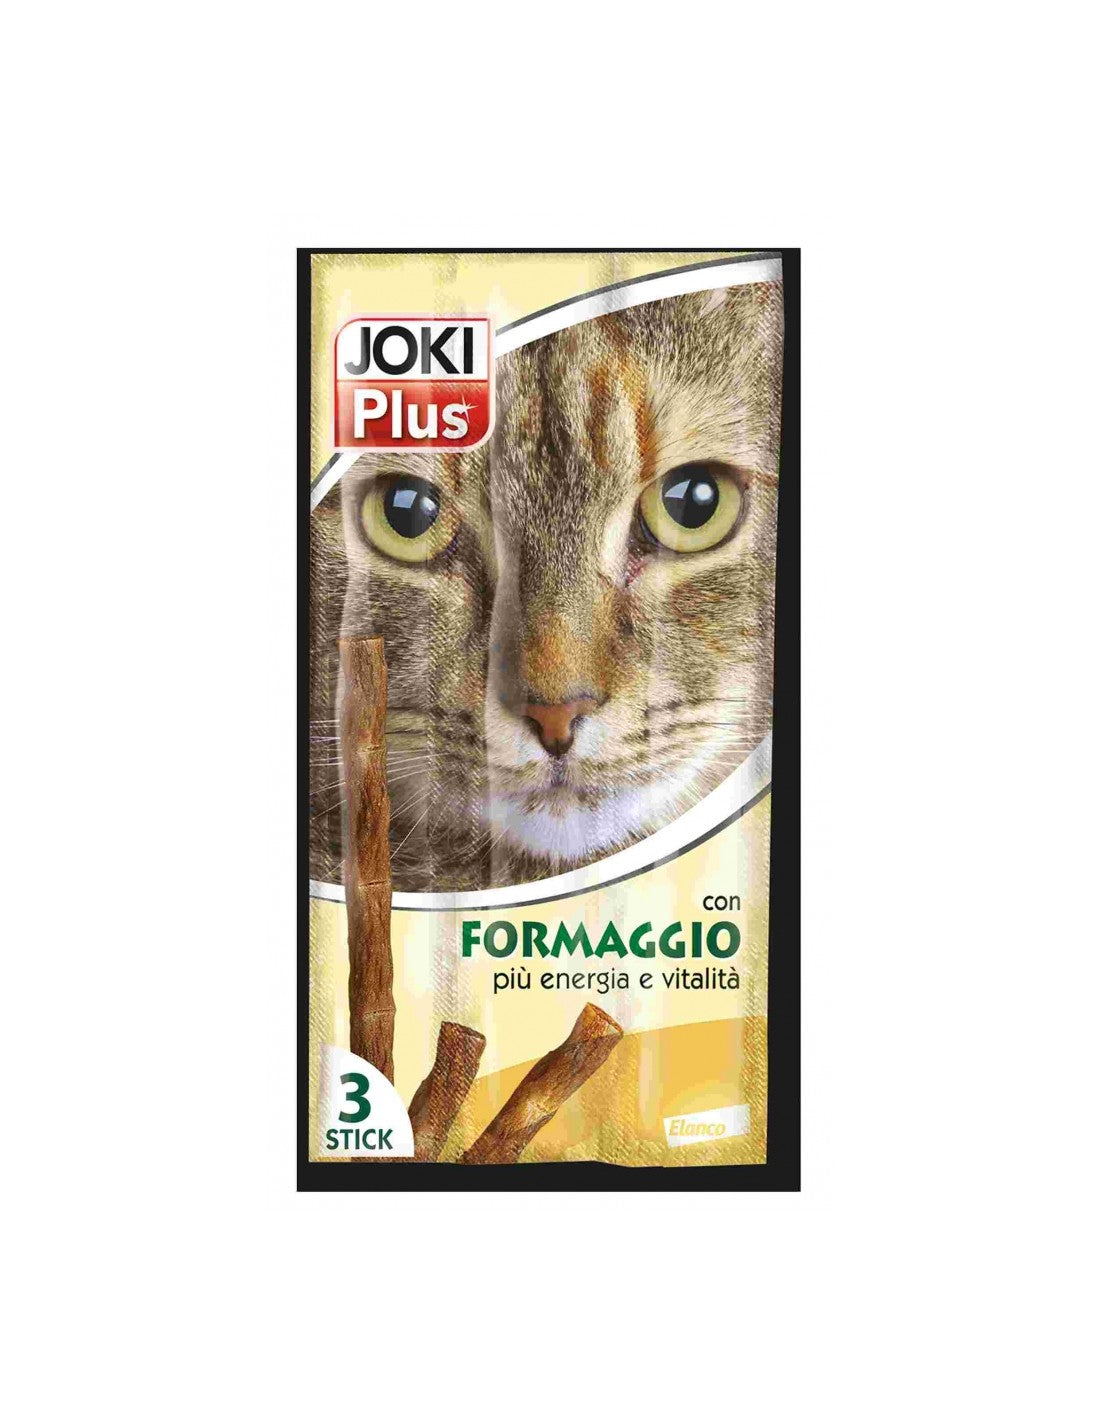 Joki Plus Formaggio 3x5g Snack per Gatto